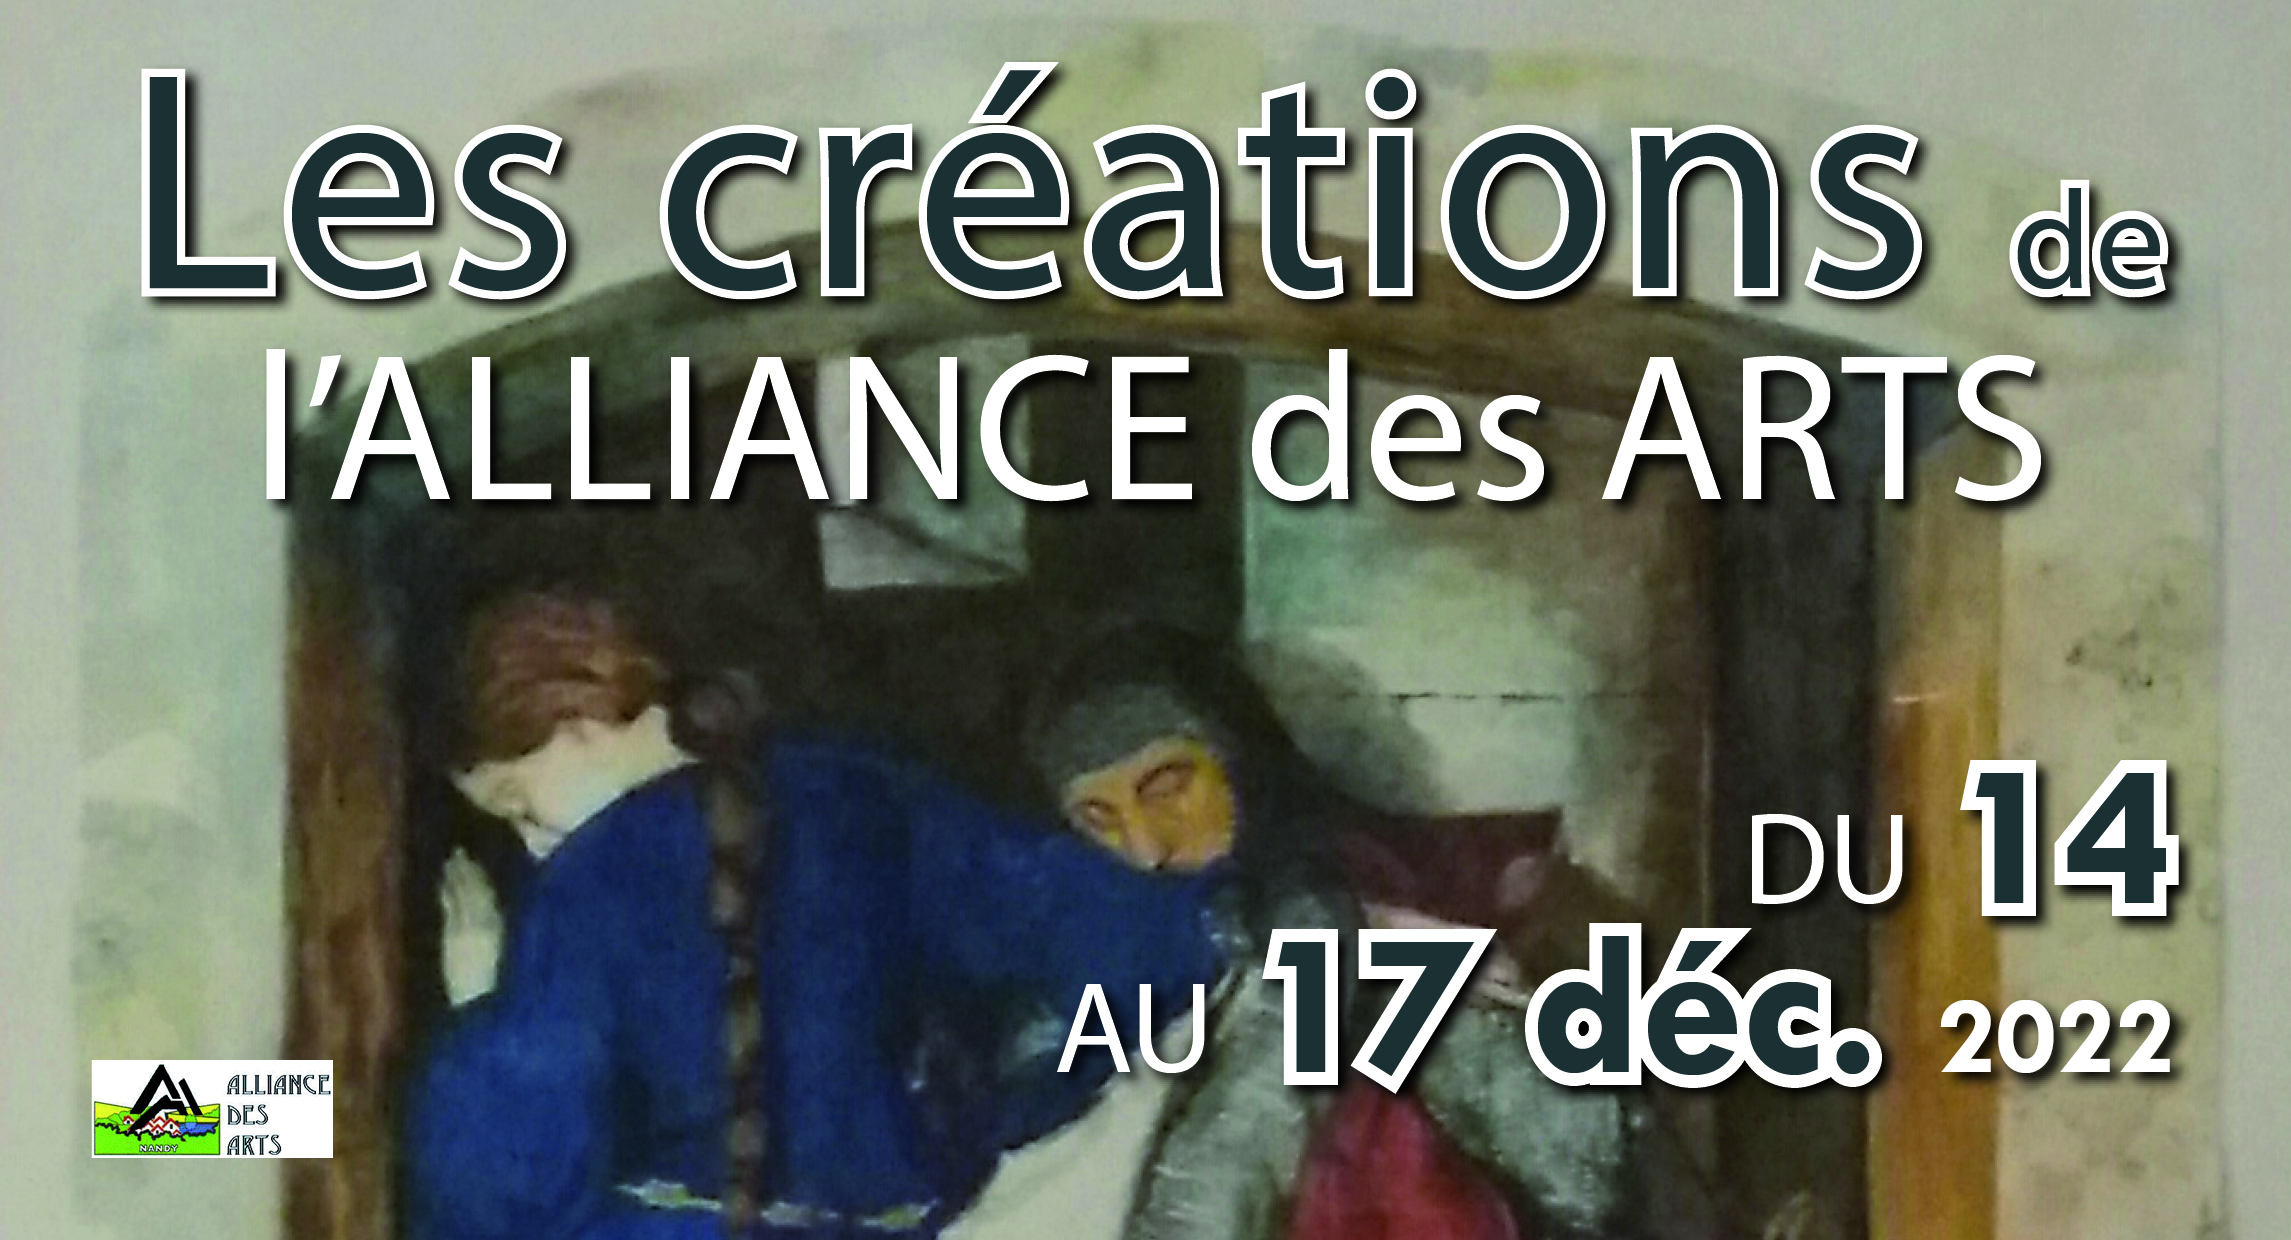 Alliance des arts décembre 2022